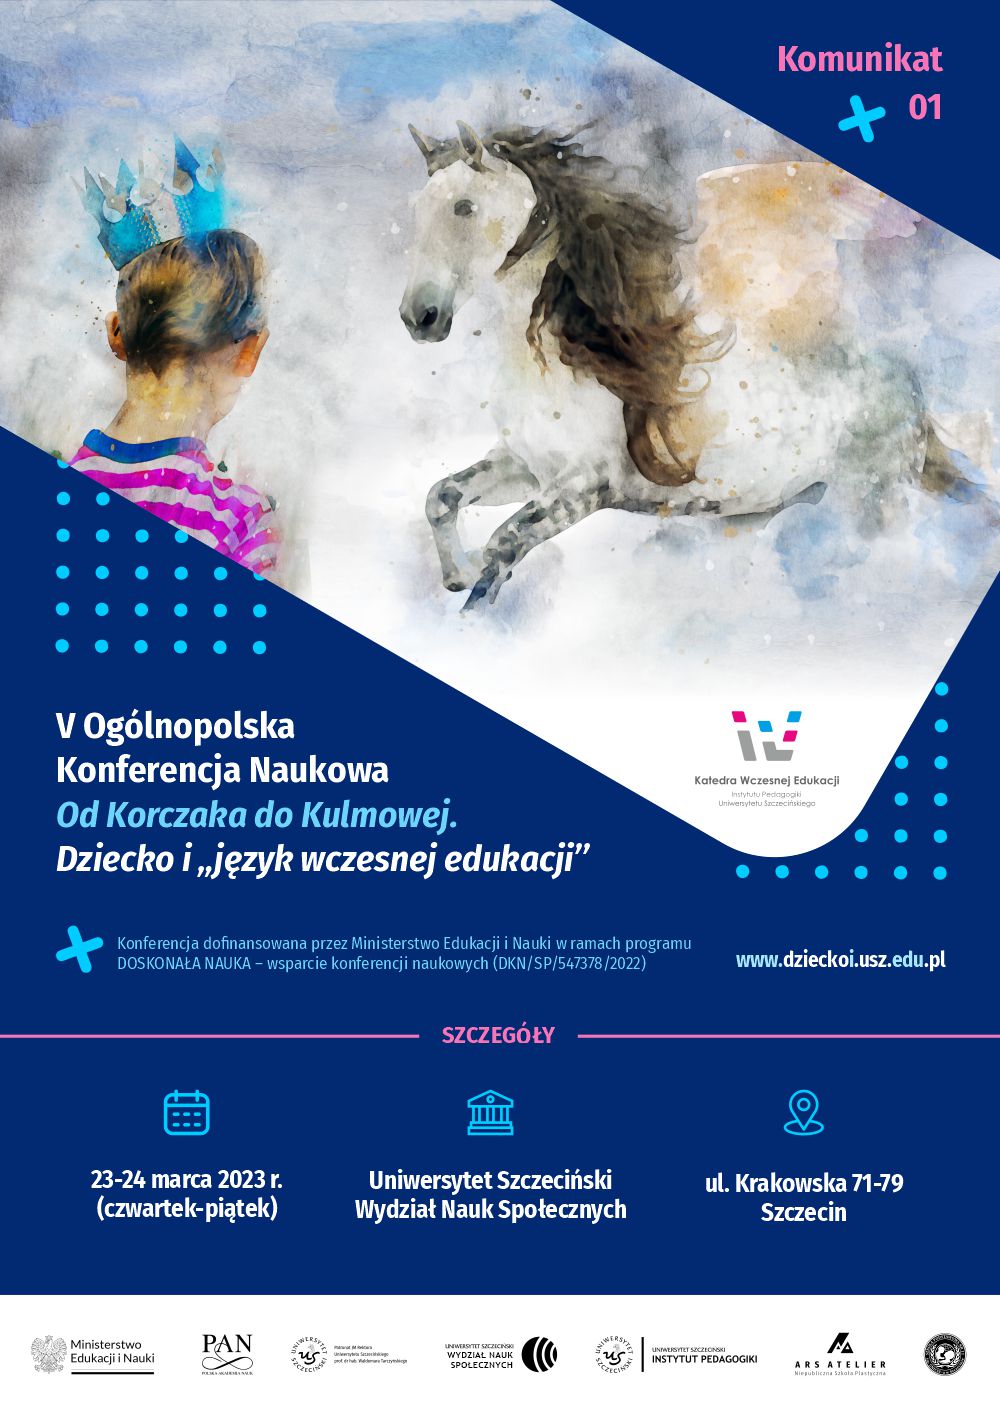 V Ogólnopolska Konferencja Naukowa: Od Korczaka do Kulmowej, Dziecko i „język wczesnej edukacji”